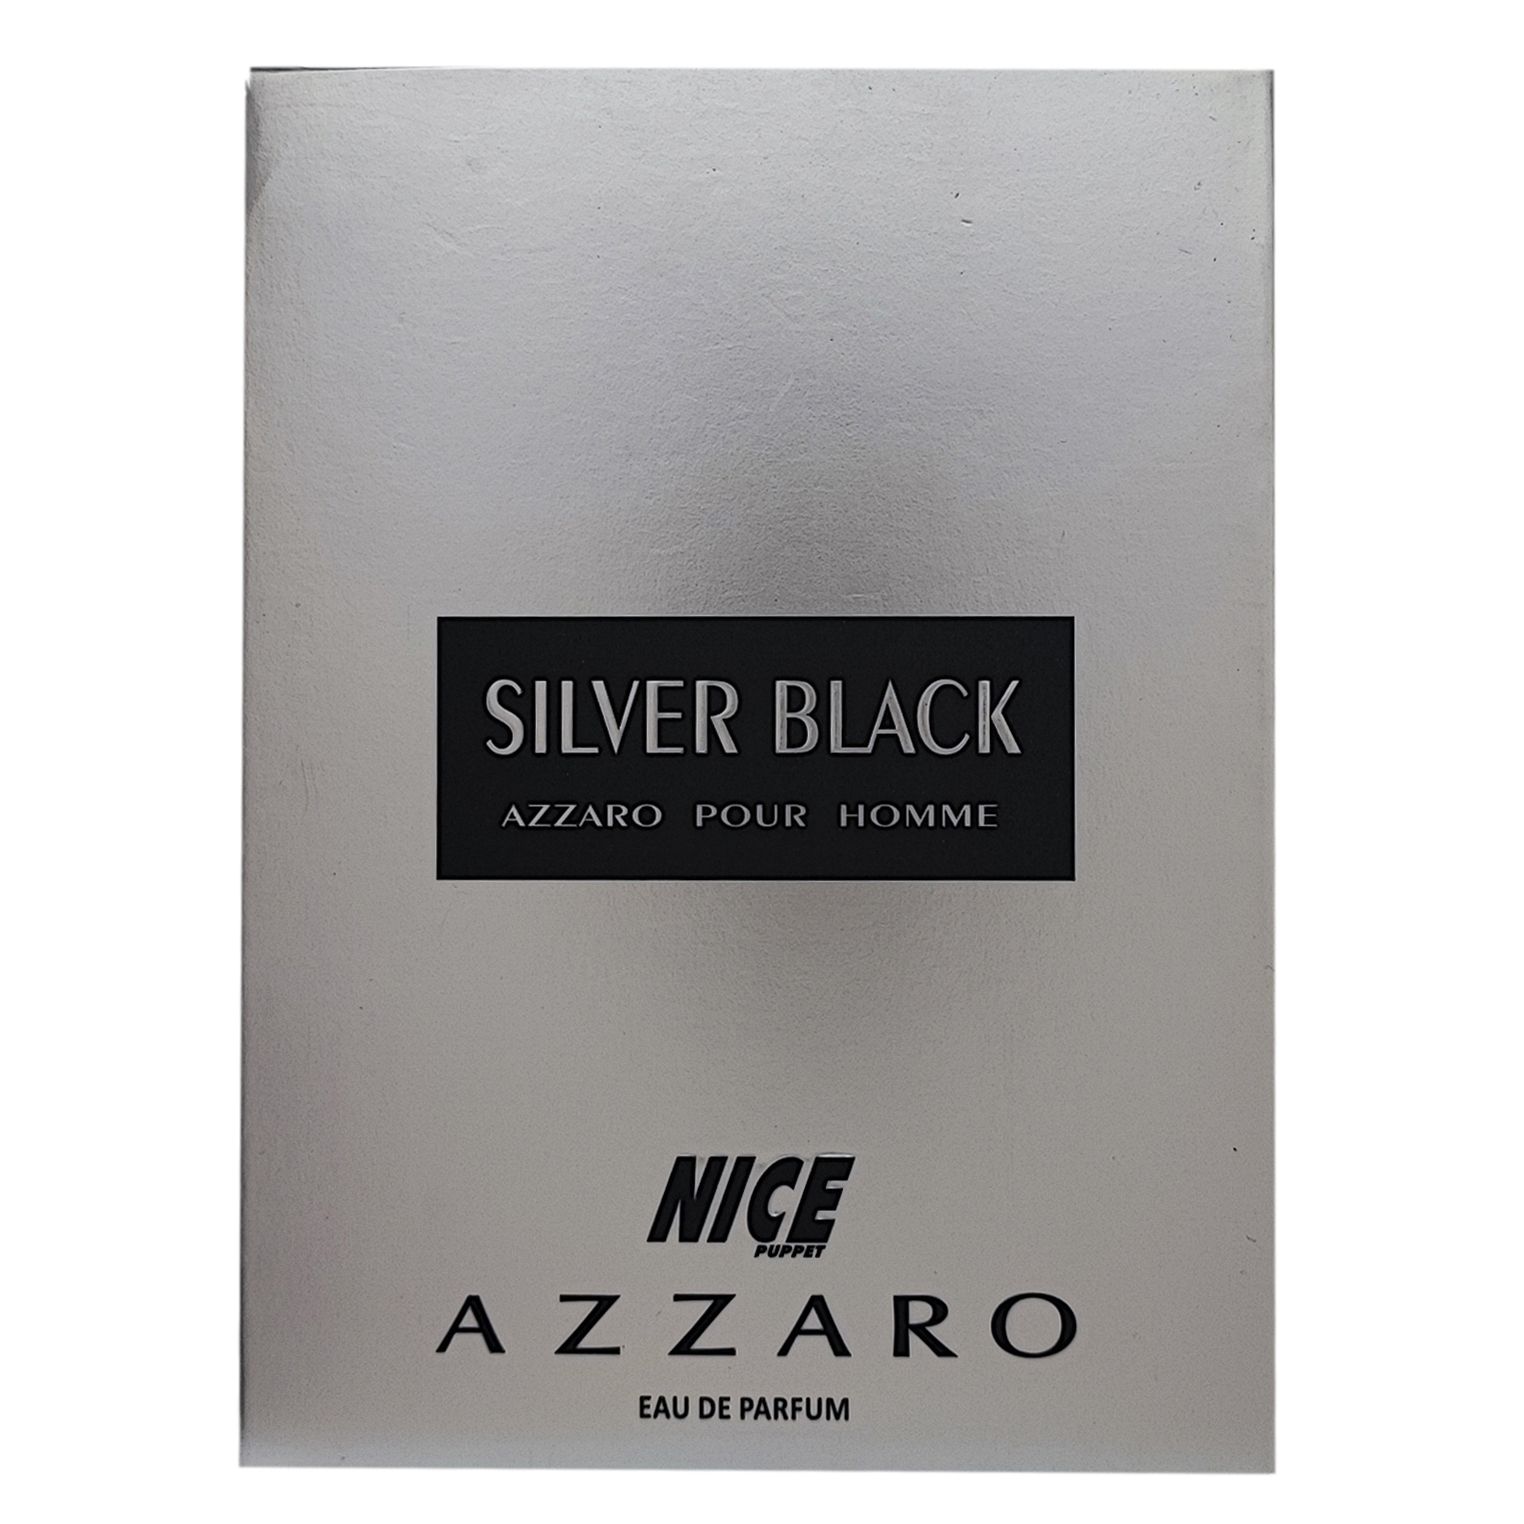 ادوپرفیوم مردانه نایس پاپت مدل azzaro silver black حجم 85 میلی لیتر -  - 3